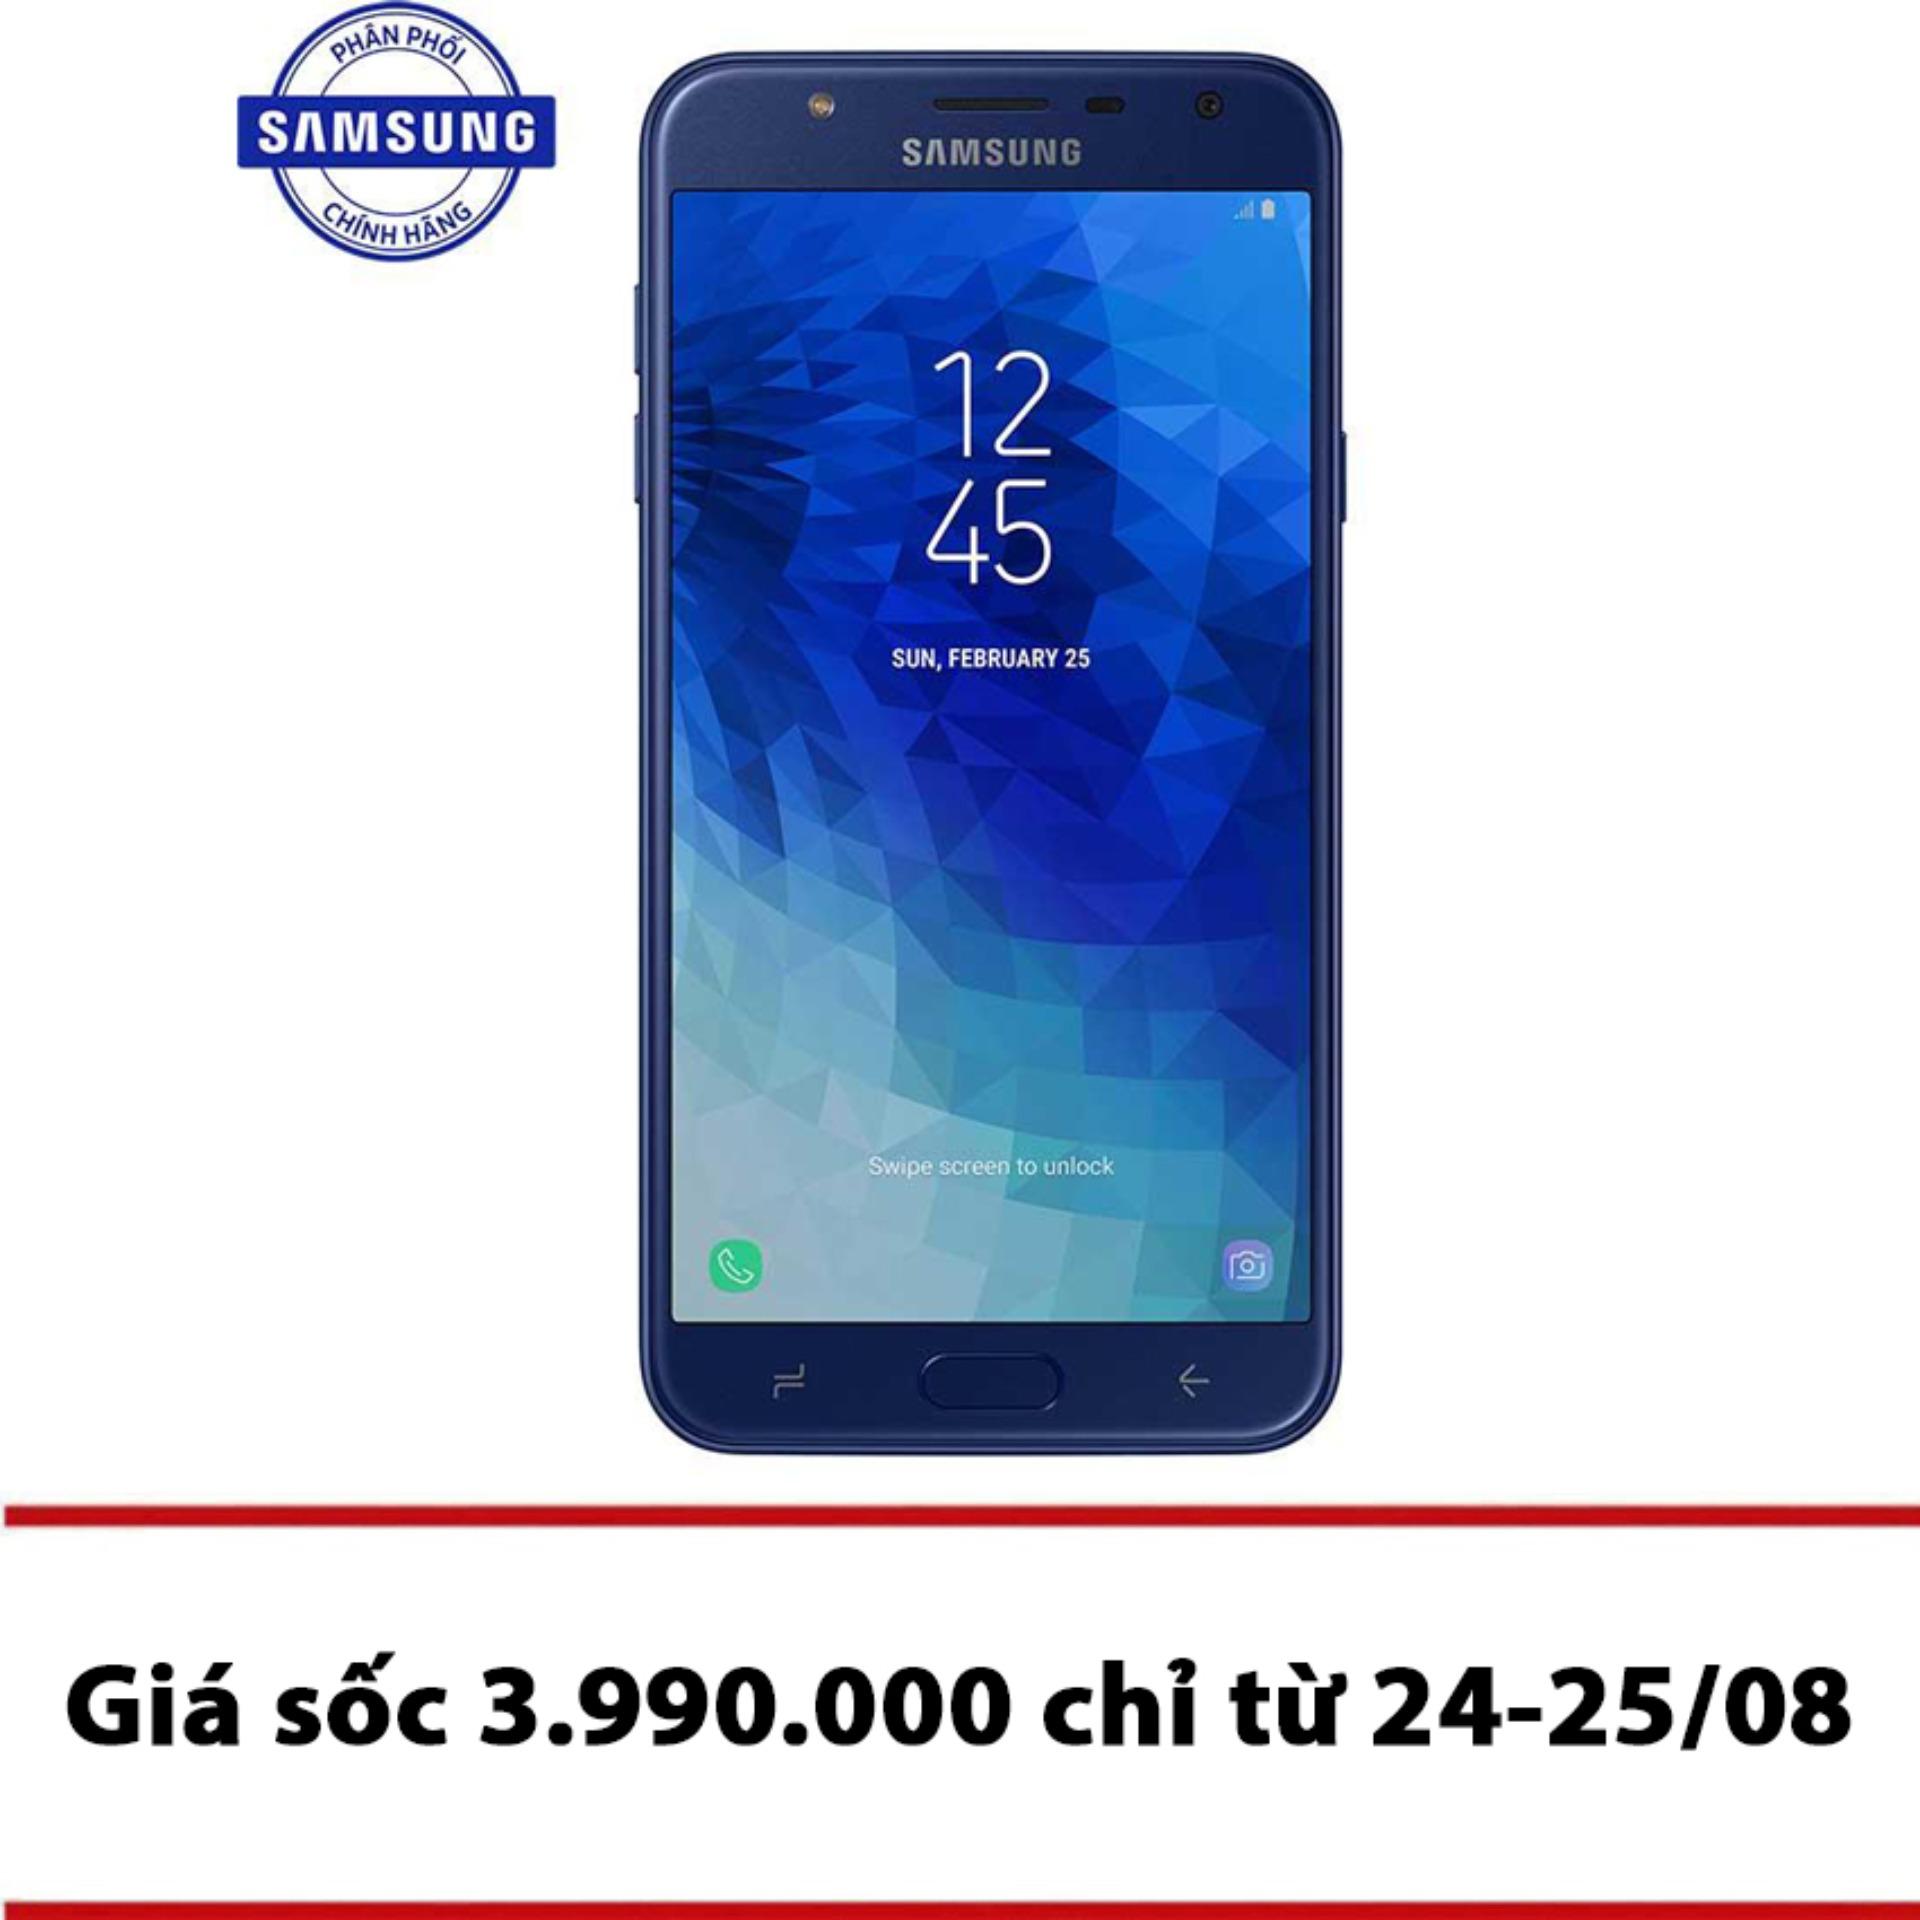 Điện thoại Samsung Galaxy J7 Duo 32GB - Hãng phân phối chính thức